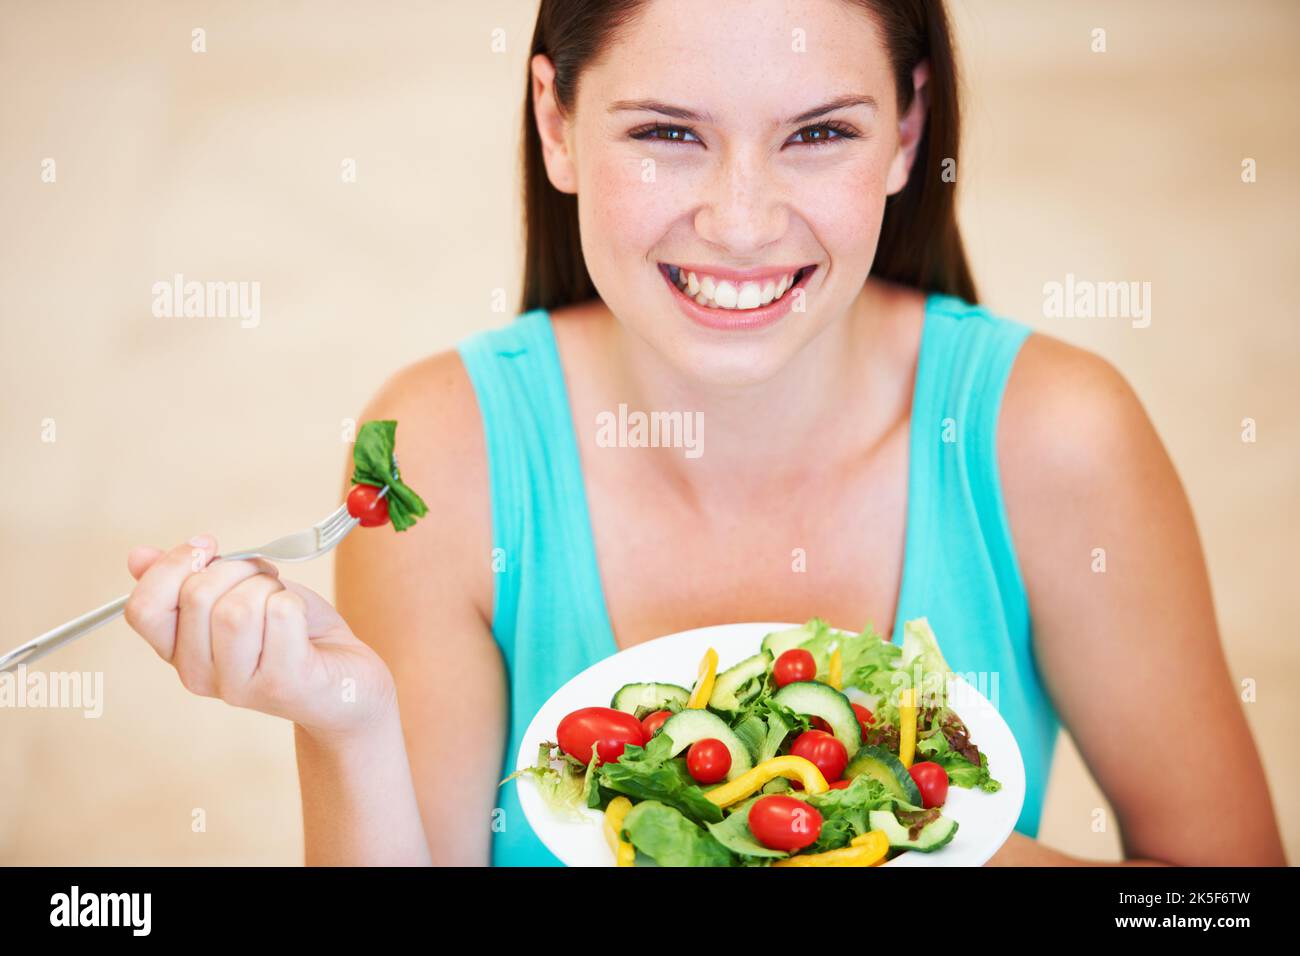 Elle aime ses verts. Portrait d'une jeune femme attrayante appréciant une salade. Banque D'Images